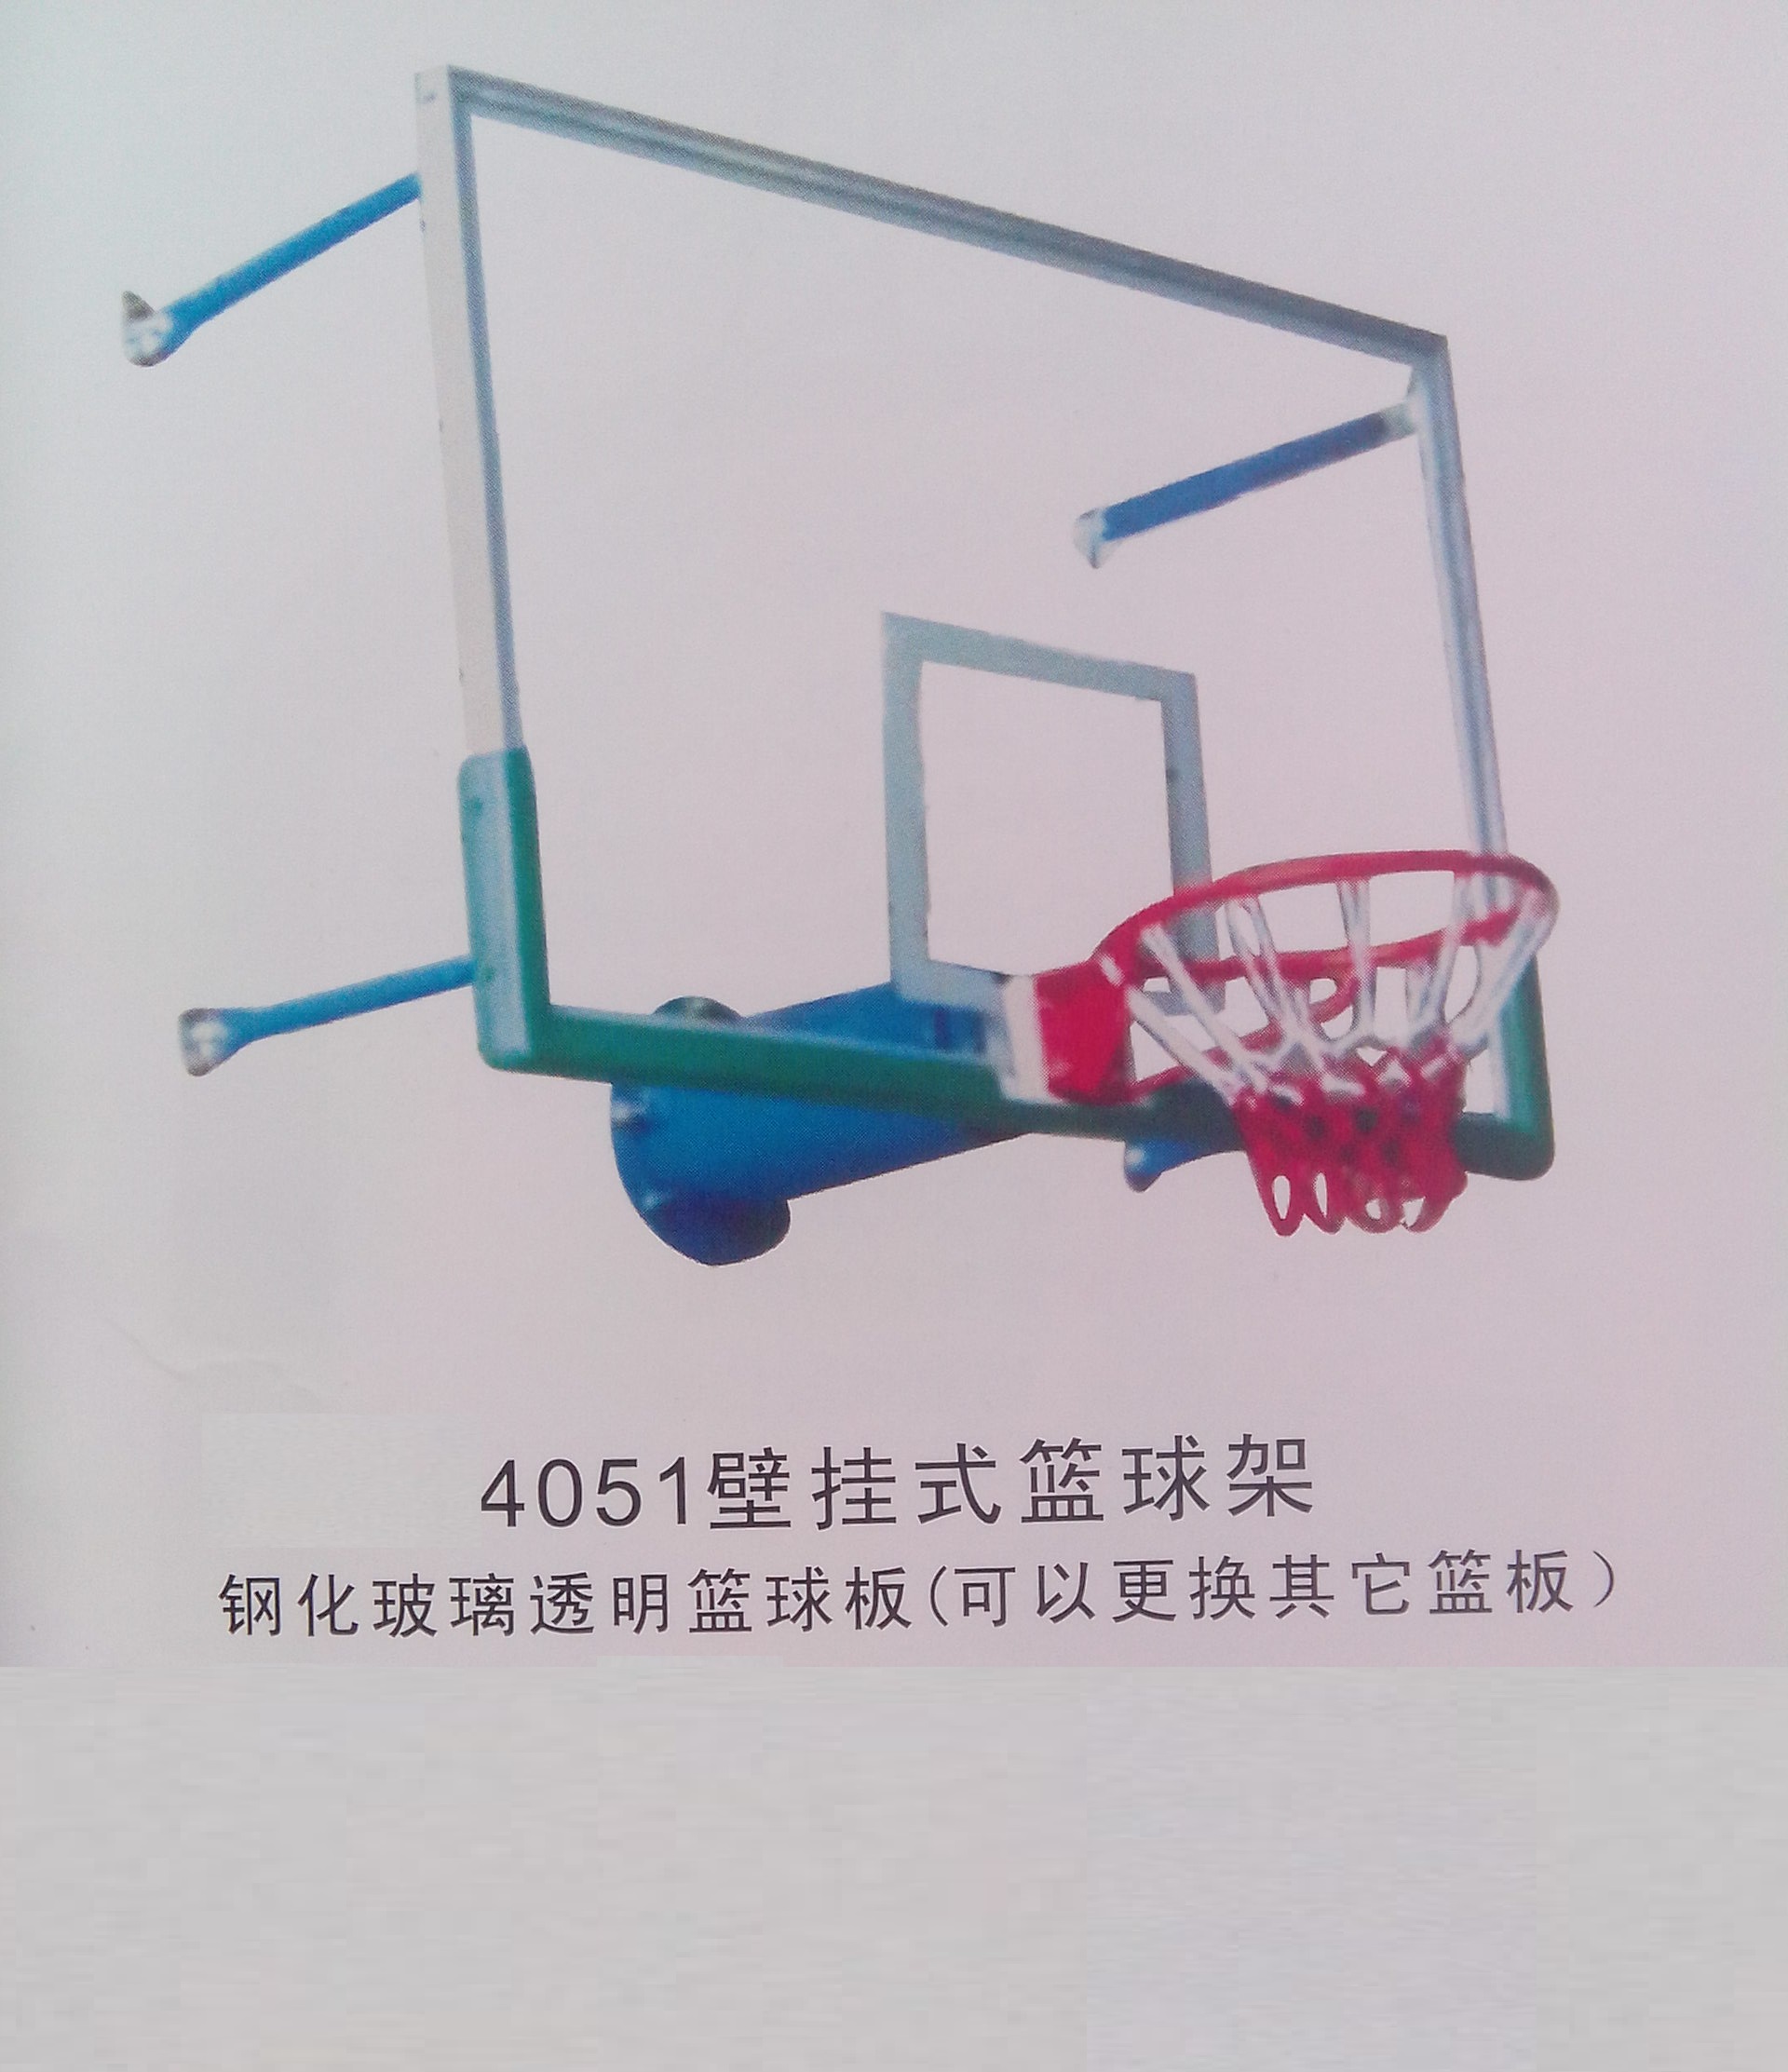 供应壁挂式篮球架  钢化玻璃透明板篮球 深圳壁挂式篮球架 篮球架